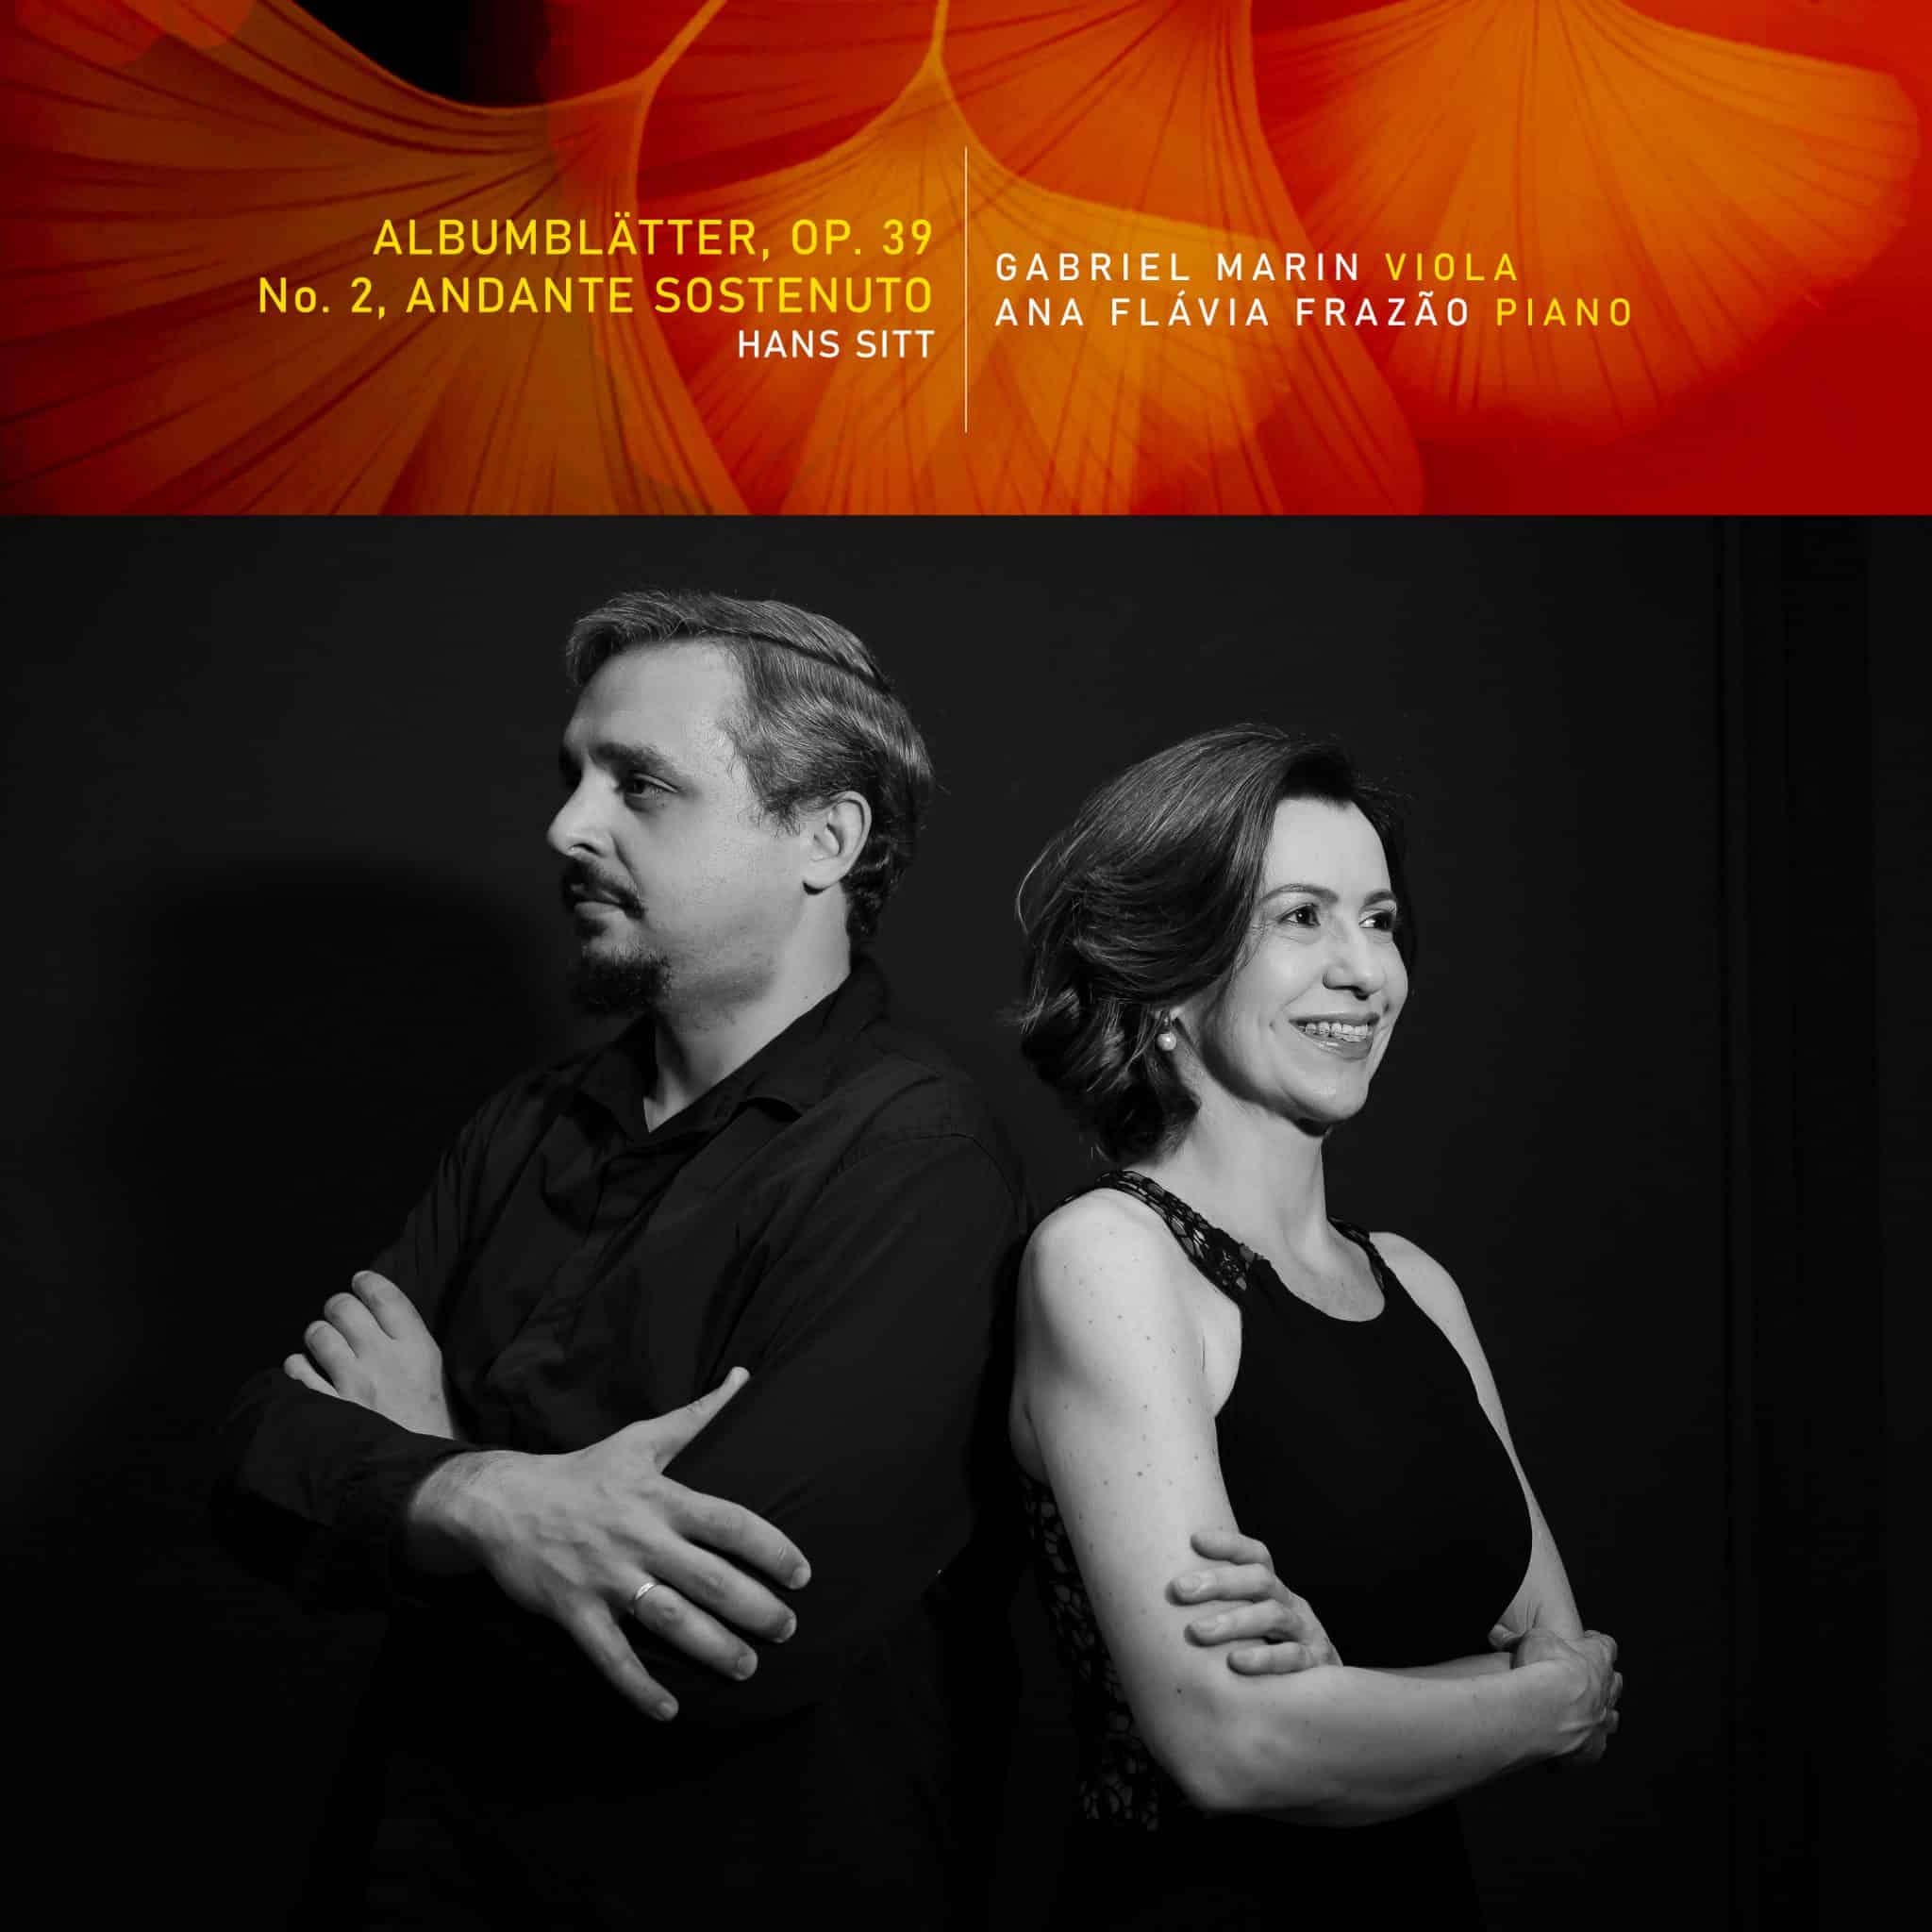 revistaprosaversoearte.com - Gabriel Marin e Ana Flávia Frazão lançam 'Albumblätter, Op. 39: No. 2, Andante Sostenuto'